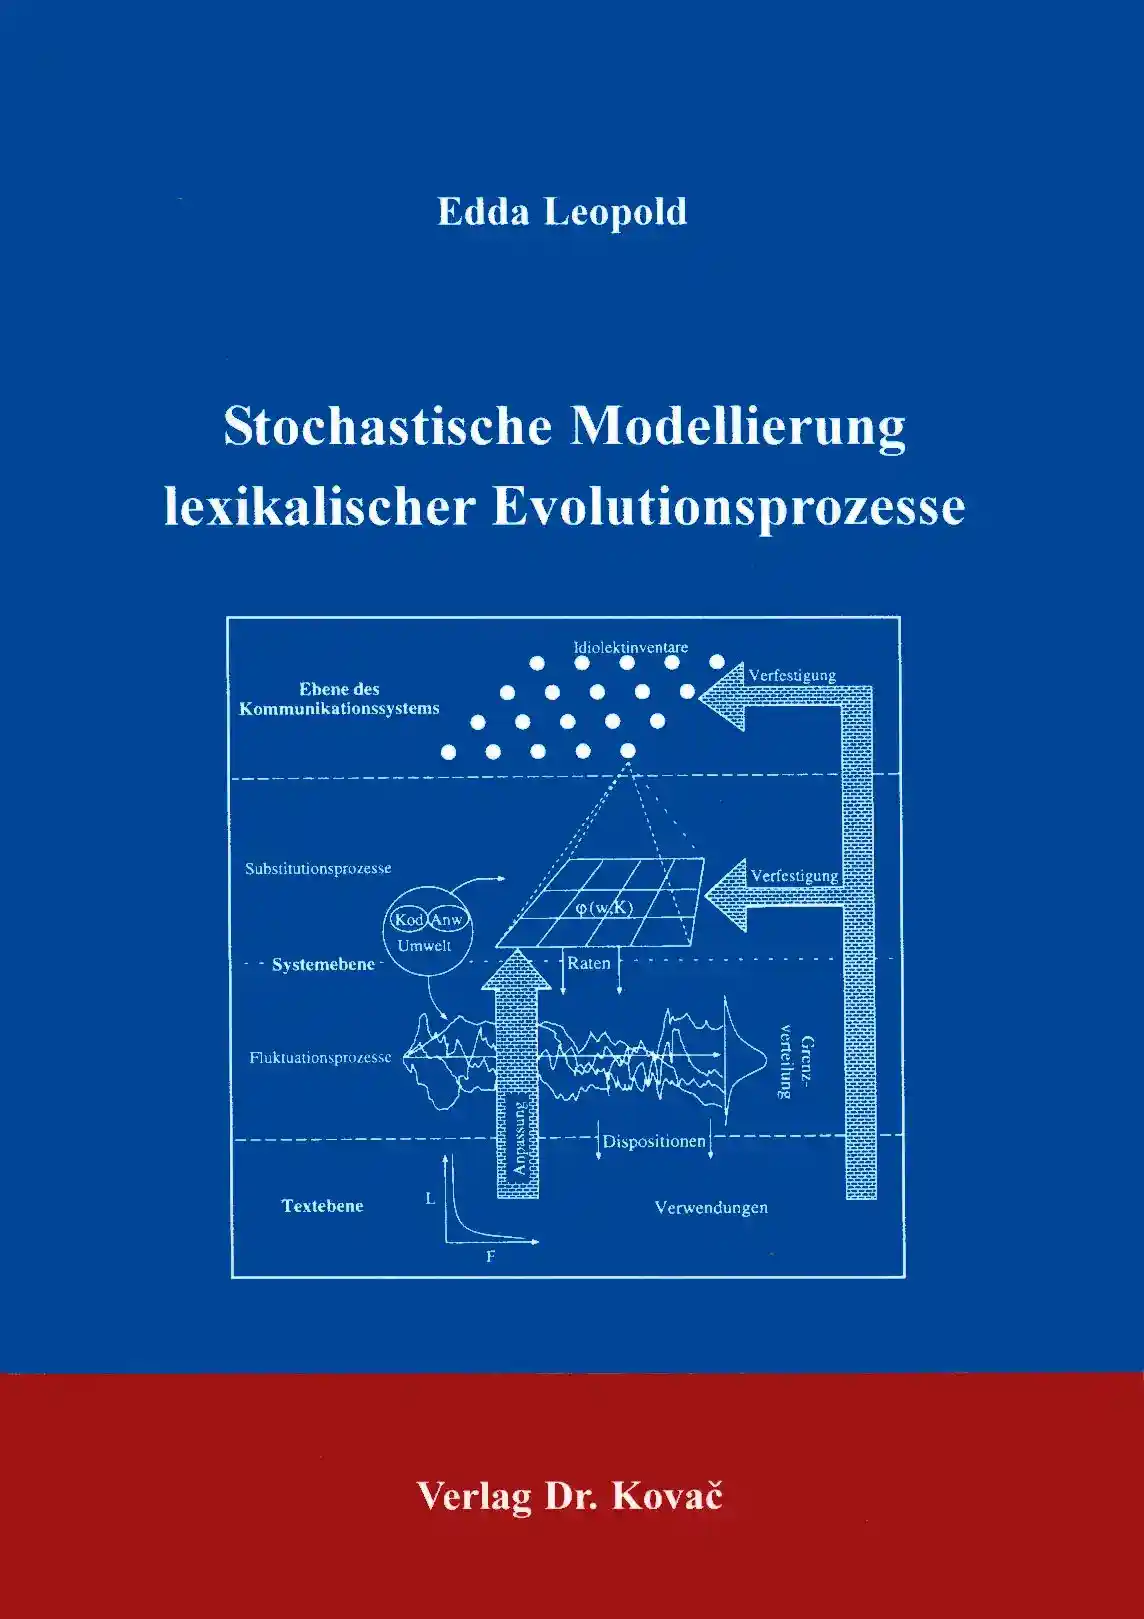  Forschungsarbeit: Stochastische Modellierung lexikalischer Evolutionsprozesse